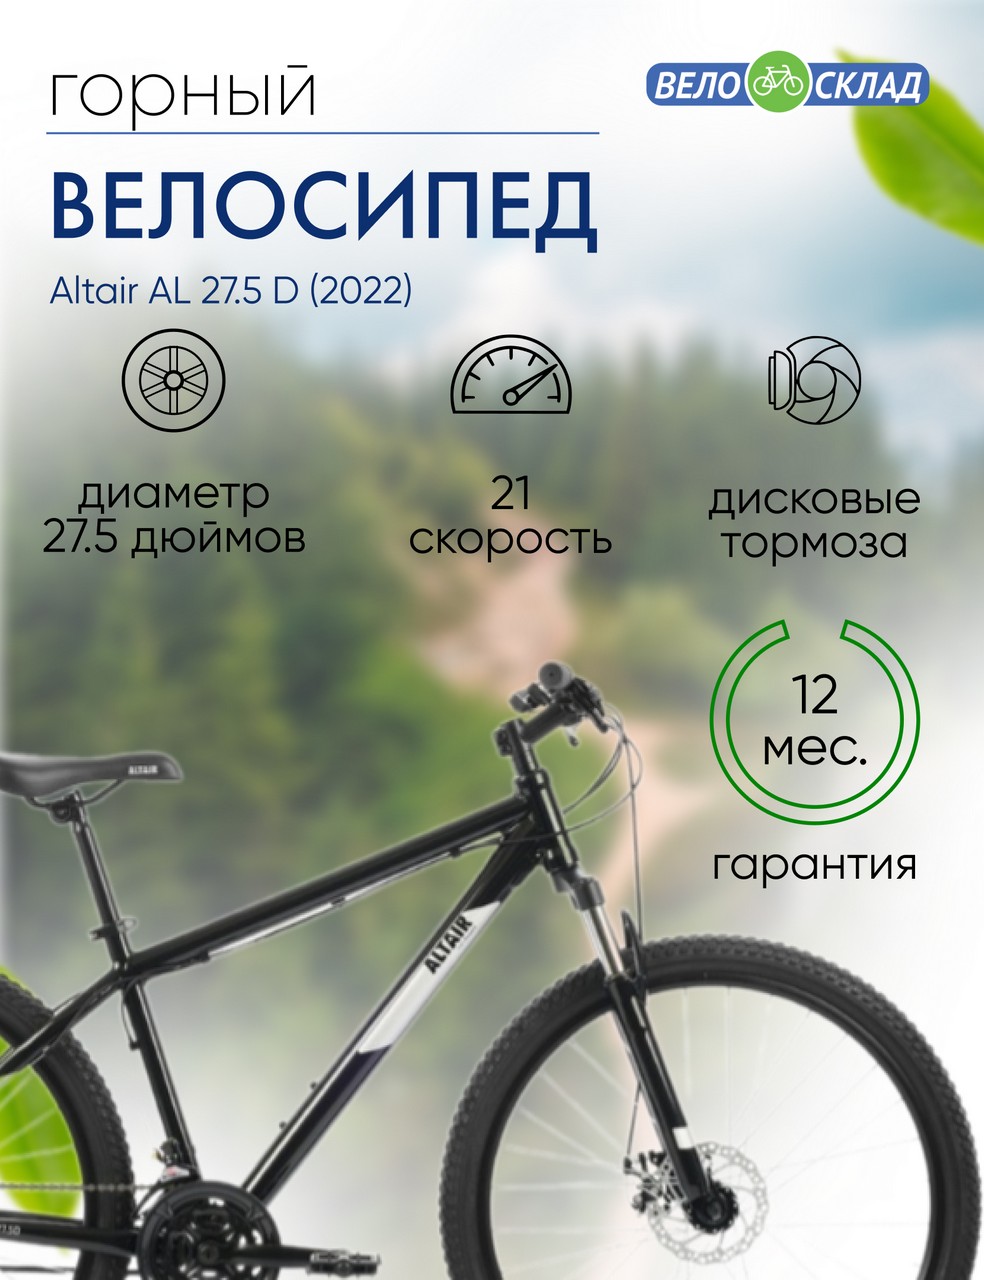 Горный велосипед Altair AL 27.5 D, год 2022, цвет Черный-Серебристый, ростовка 15